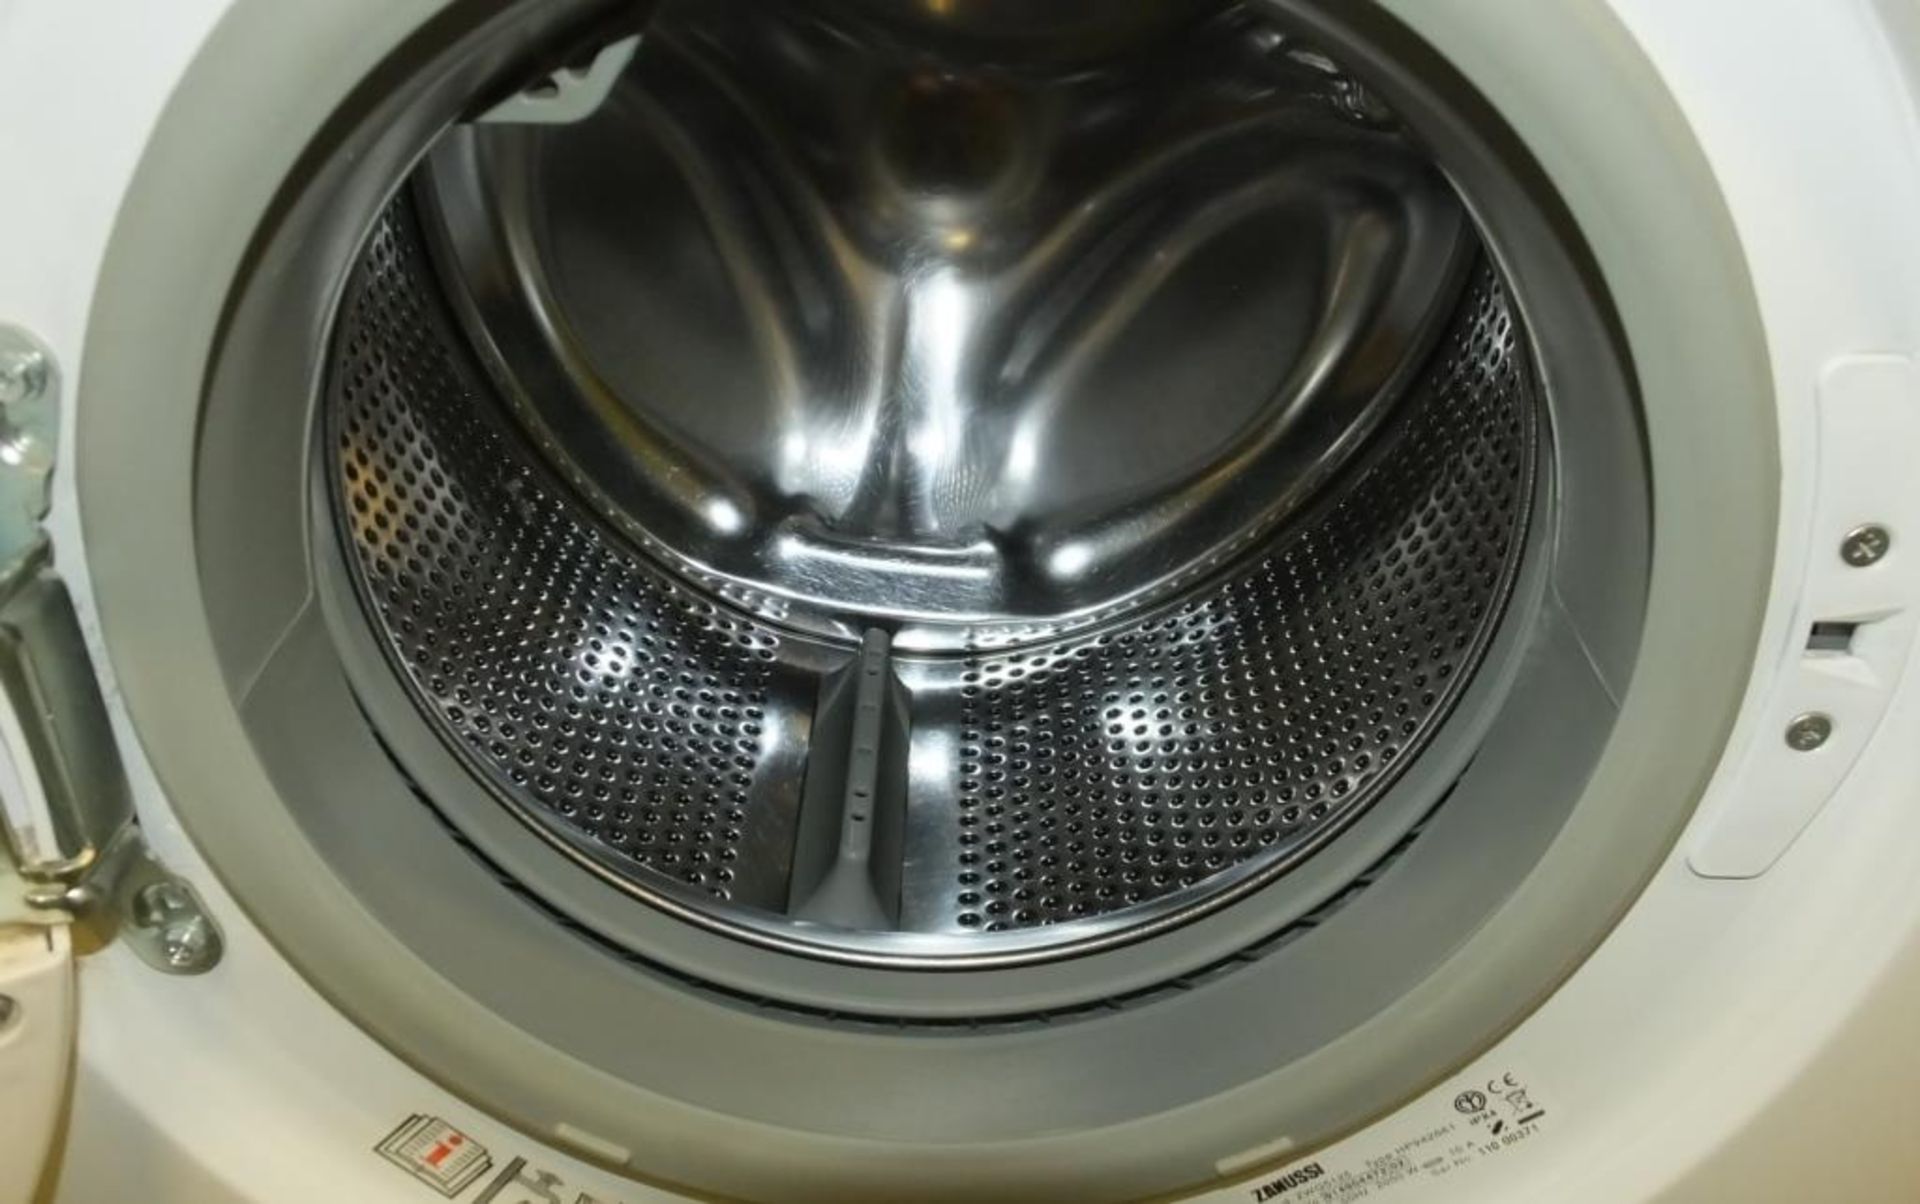 Zanussi ZWG 5125 Washing Machine - Image 2 of 2